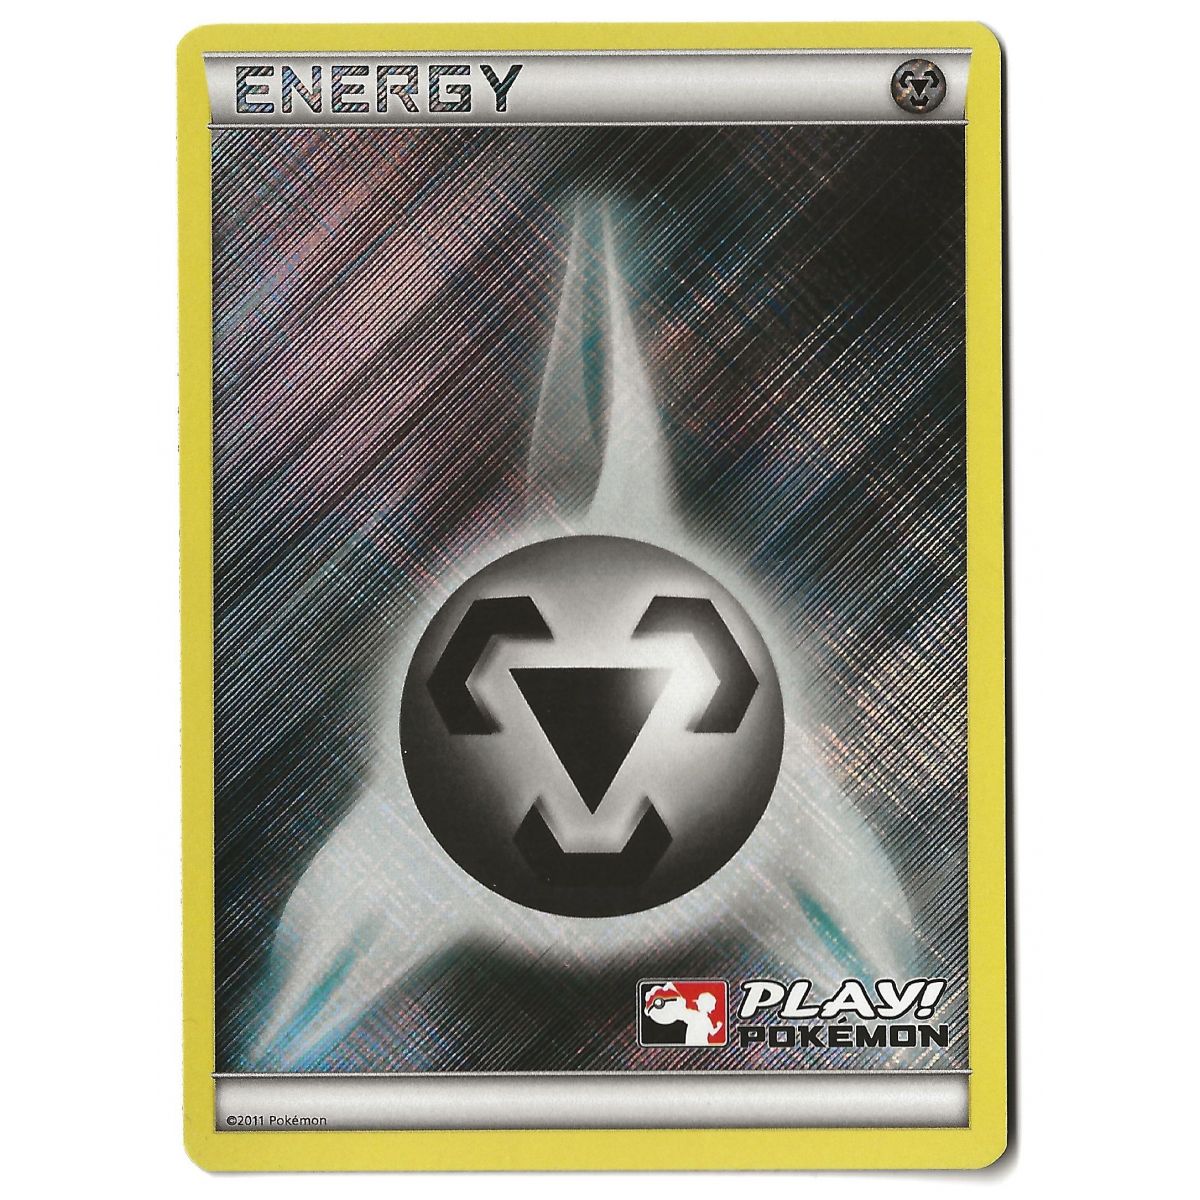 Item Energy Metal Play! Pokémon - Reverse Rare - 2011